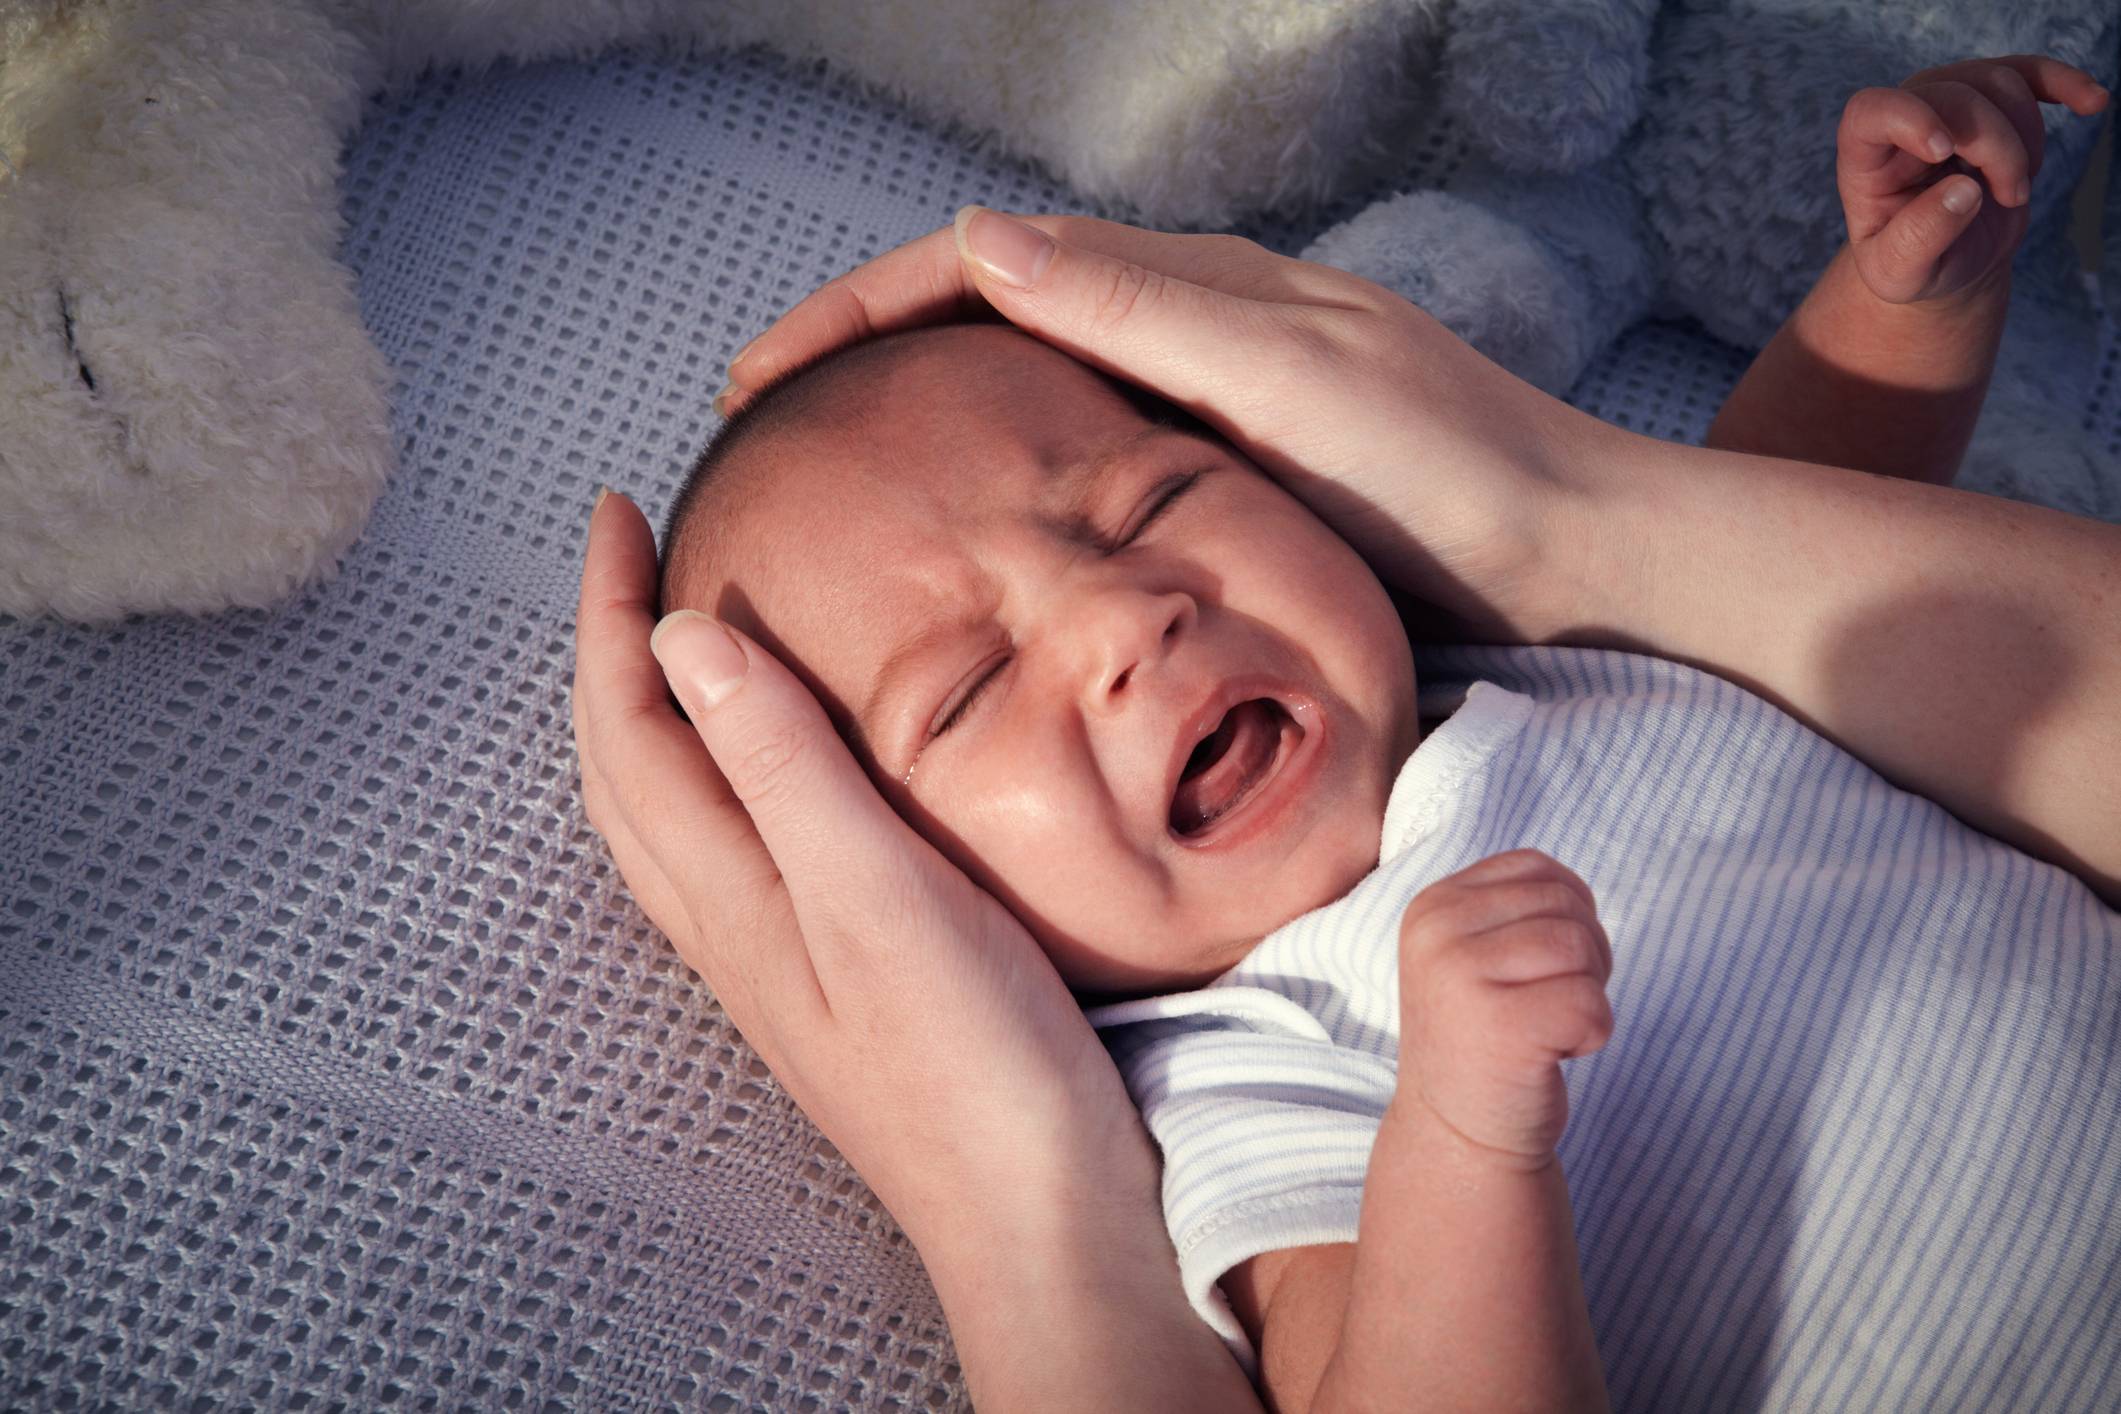 Ребенок 9 месяцев — плохо спит, ночью часто просыпается